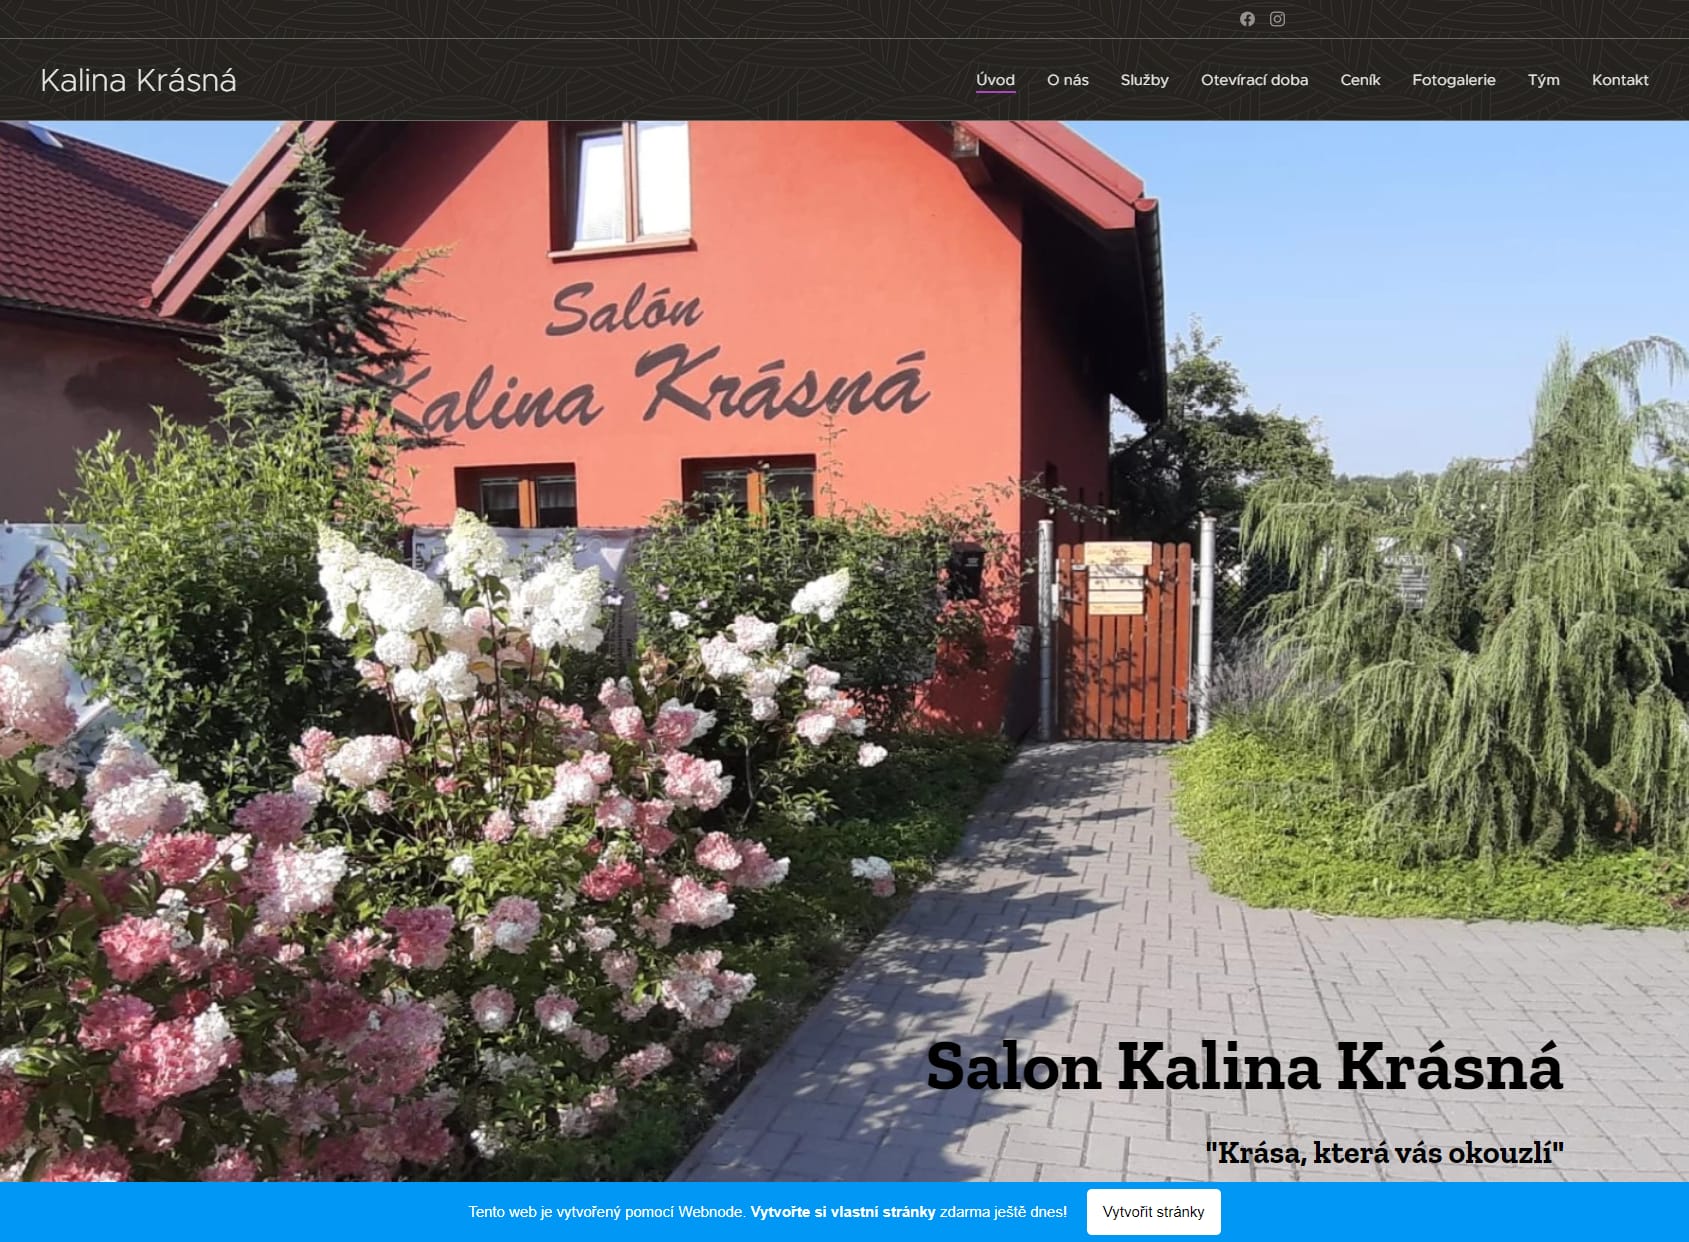 Salon Kalina Krasna